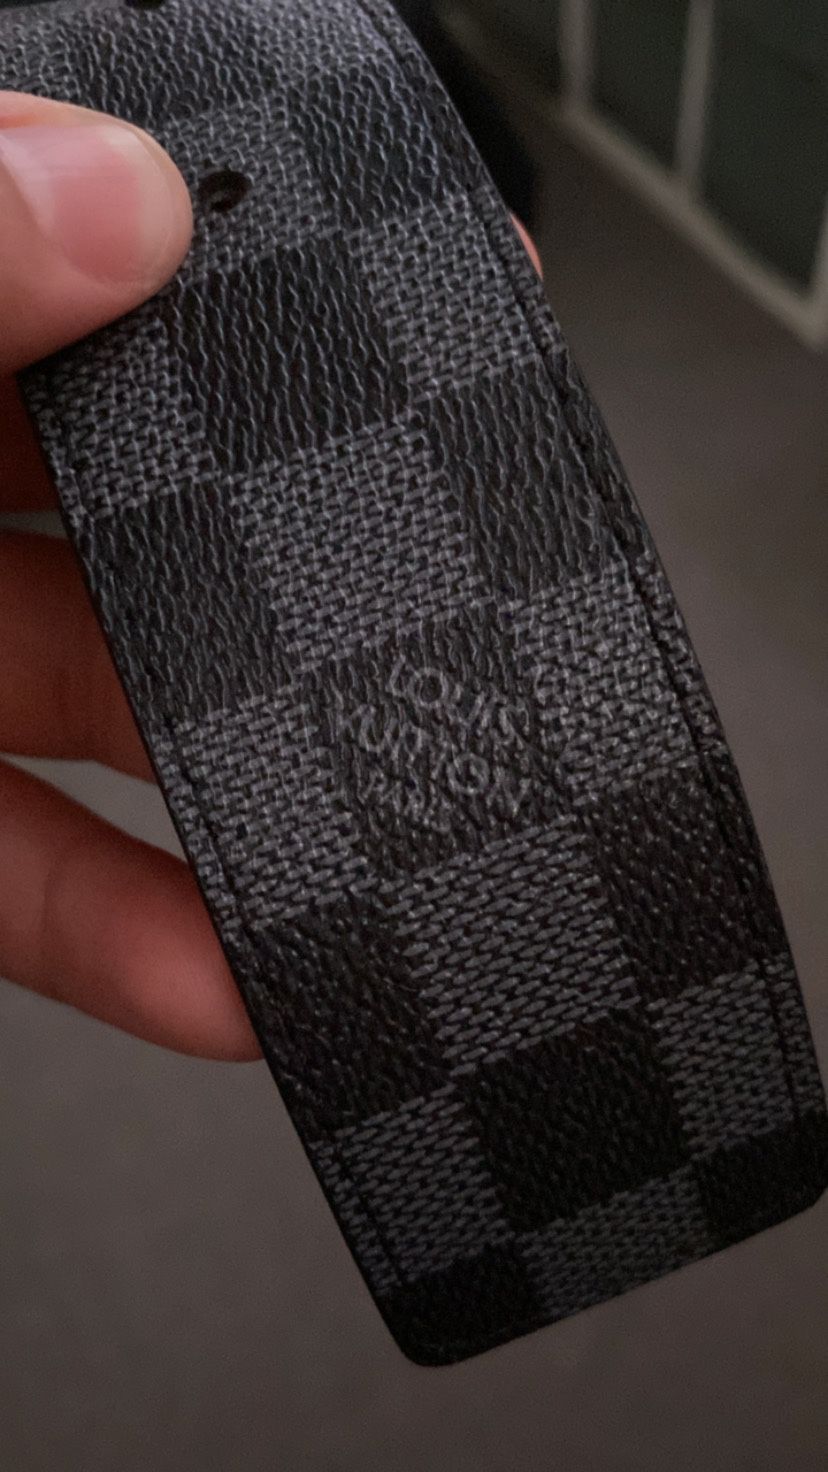 2 Louis Vuitton Men Belts for Sale in Friendswood, TX - OfferUp